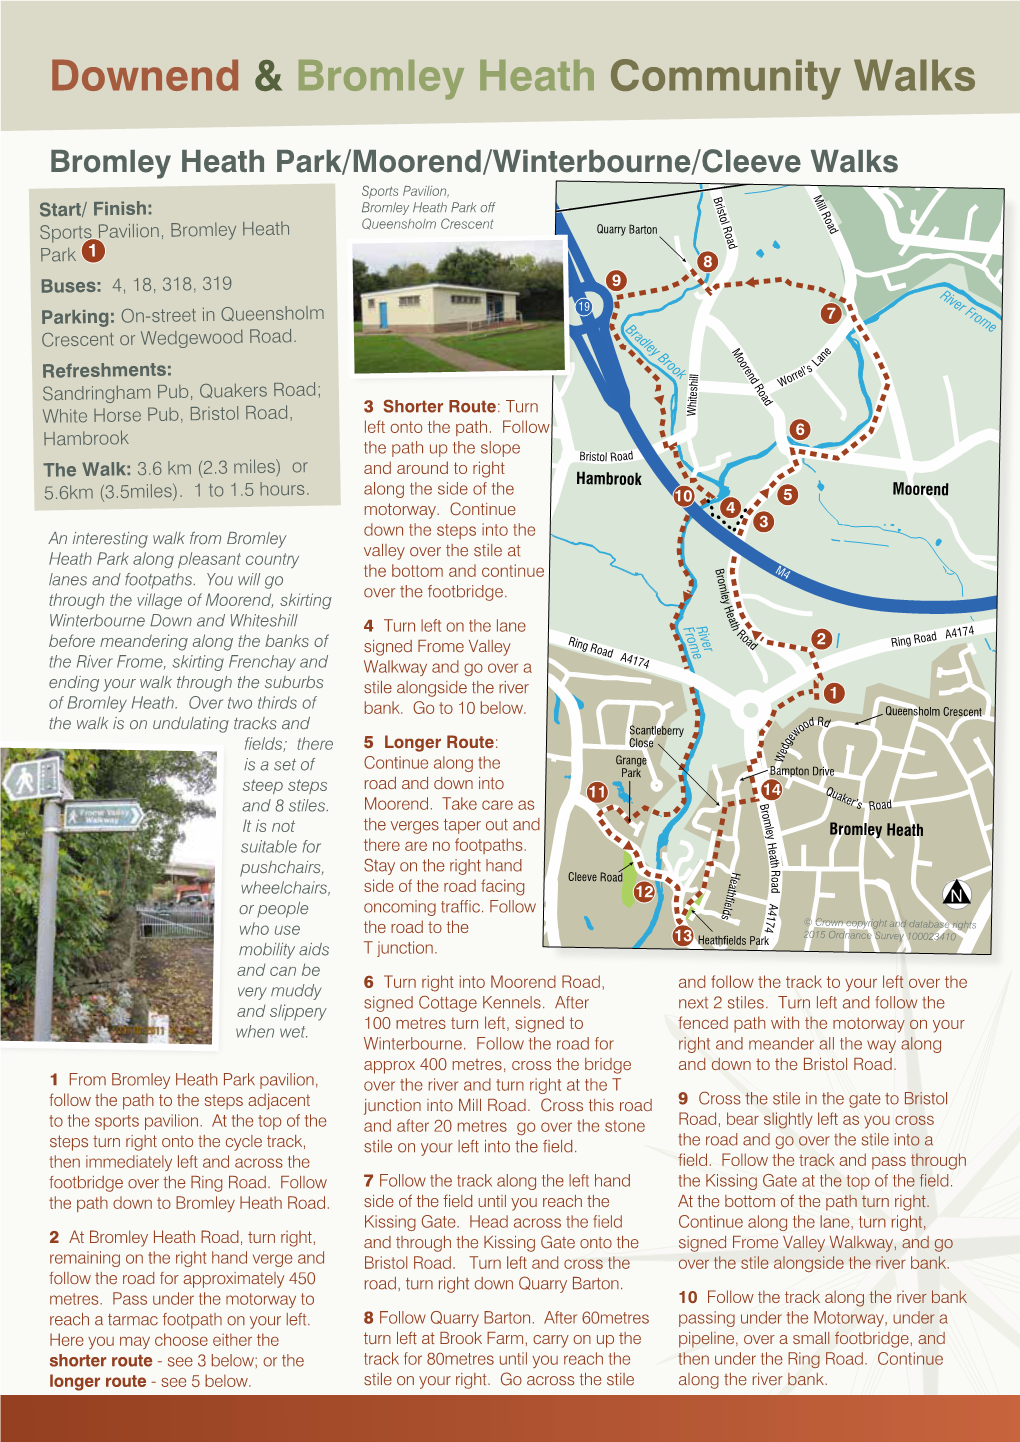 Downend & Bromley Heath Community Walks